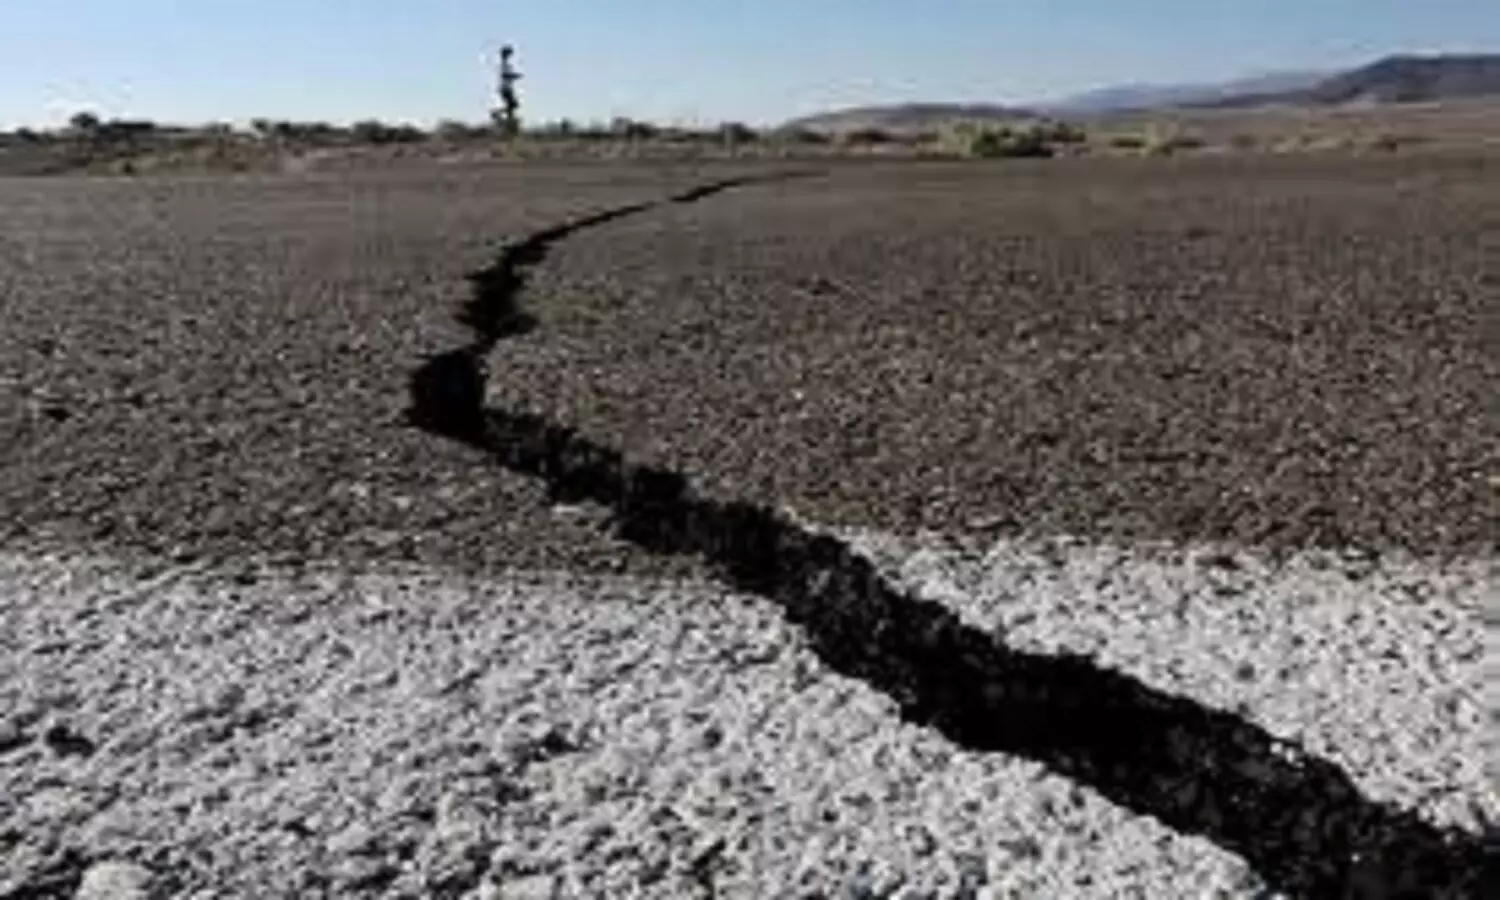 Earth Quake in Seoni: एक ओर एमपी में बाढ़, वहीं सिवनी में आया भूकंप, दहशत में लोग